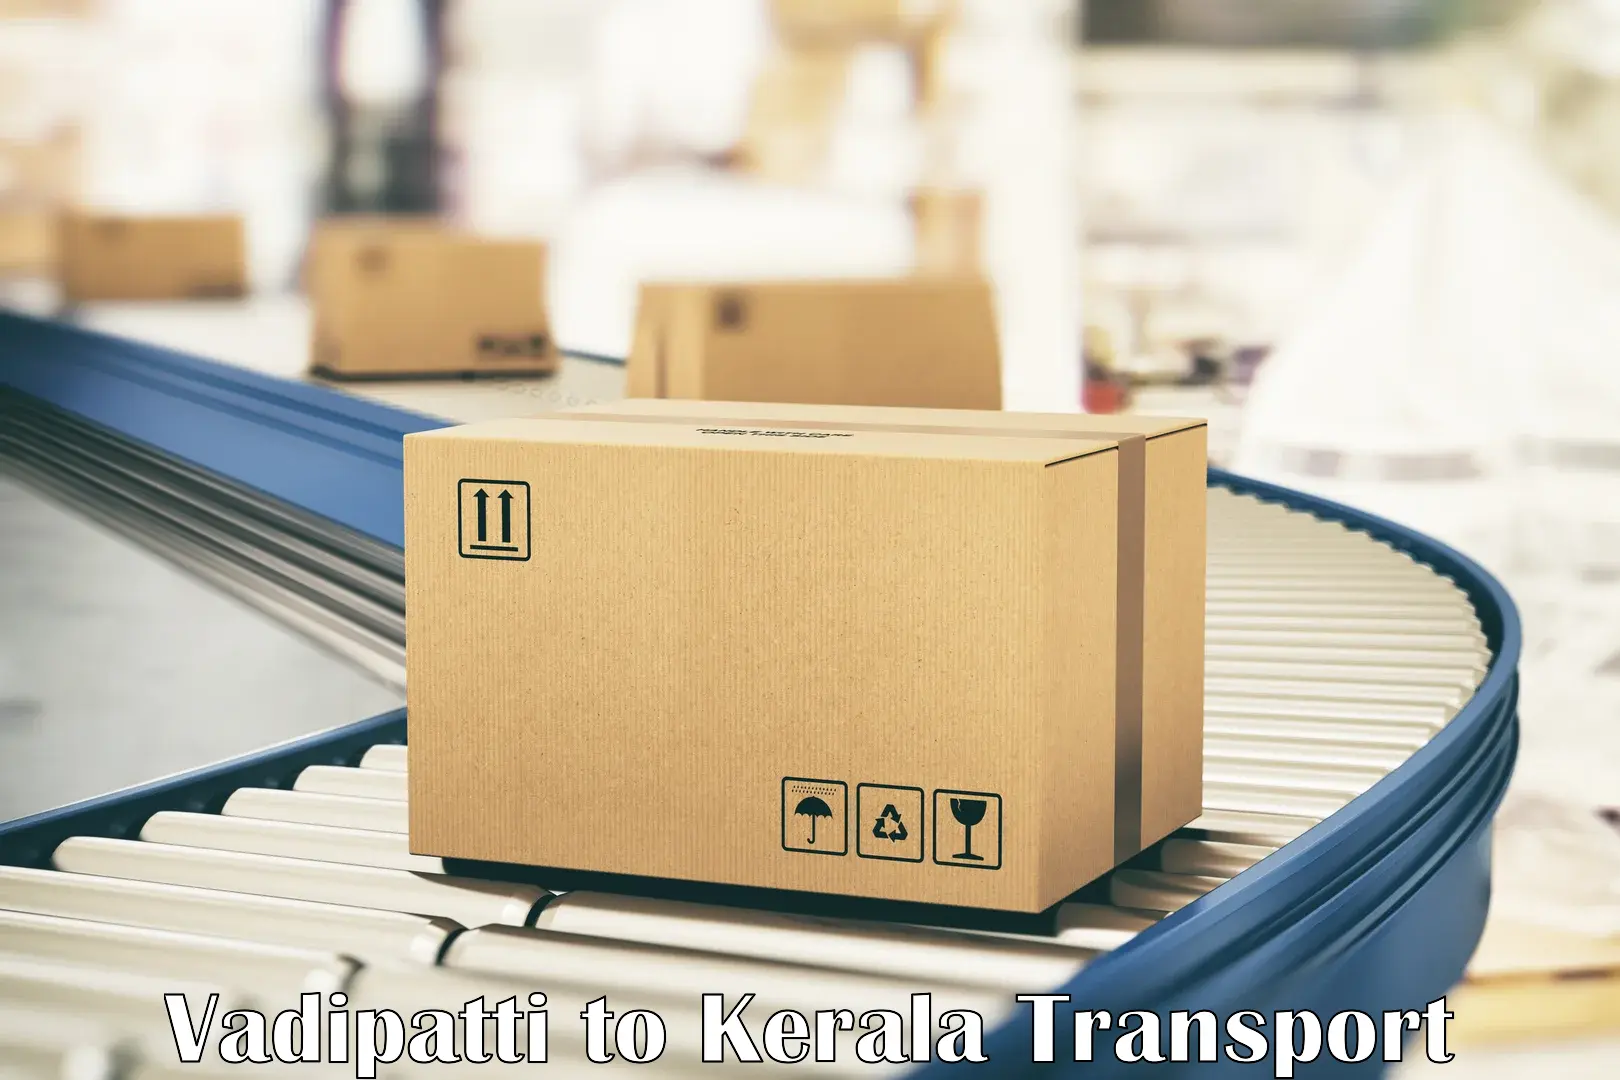 Cargo transportation services Vadipatti to IIIT Kottayam